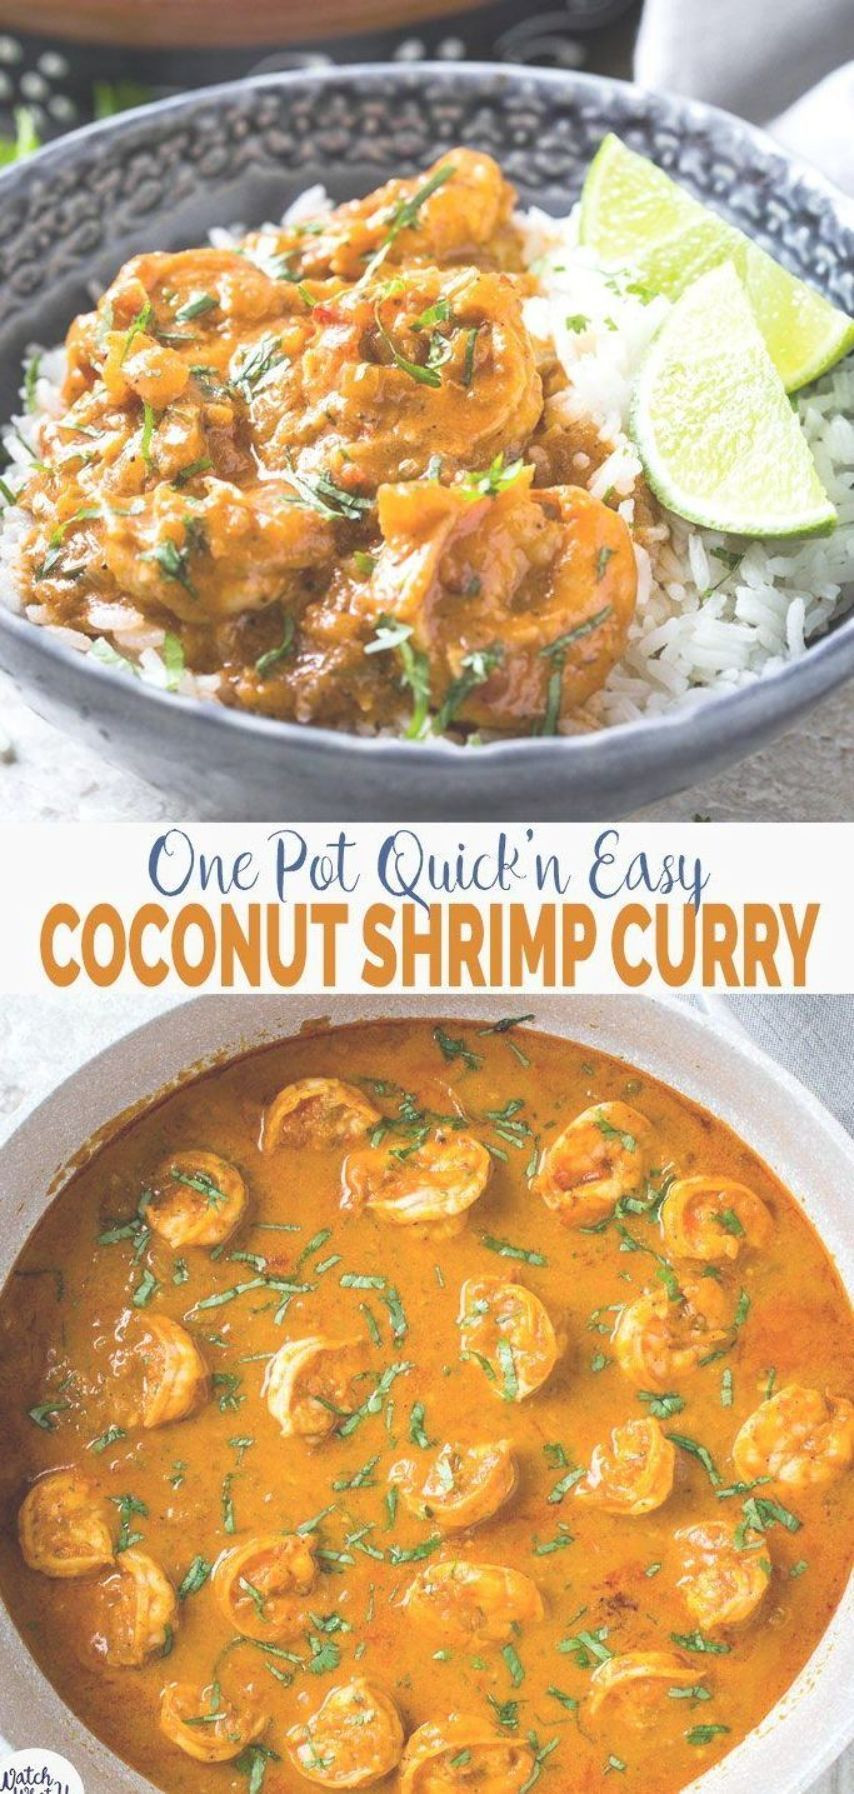 Paleo Shrimp Recipes With Coconut Milk
 Quick and easy Coconut Shrimp Curry Delicious shrimp